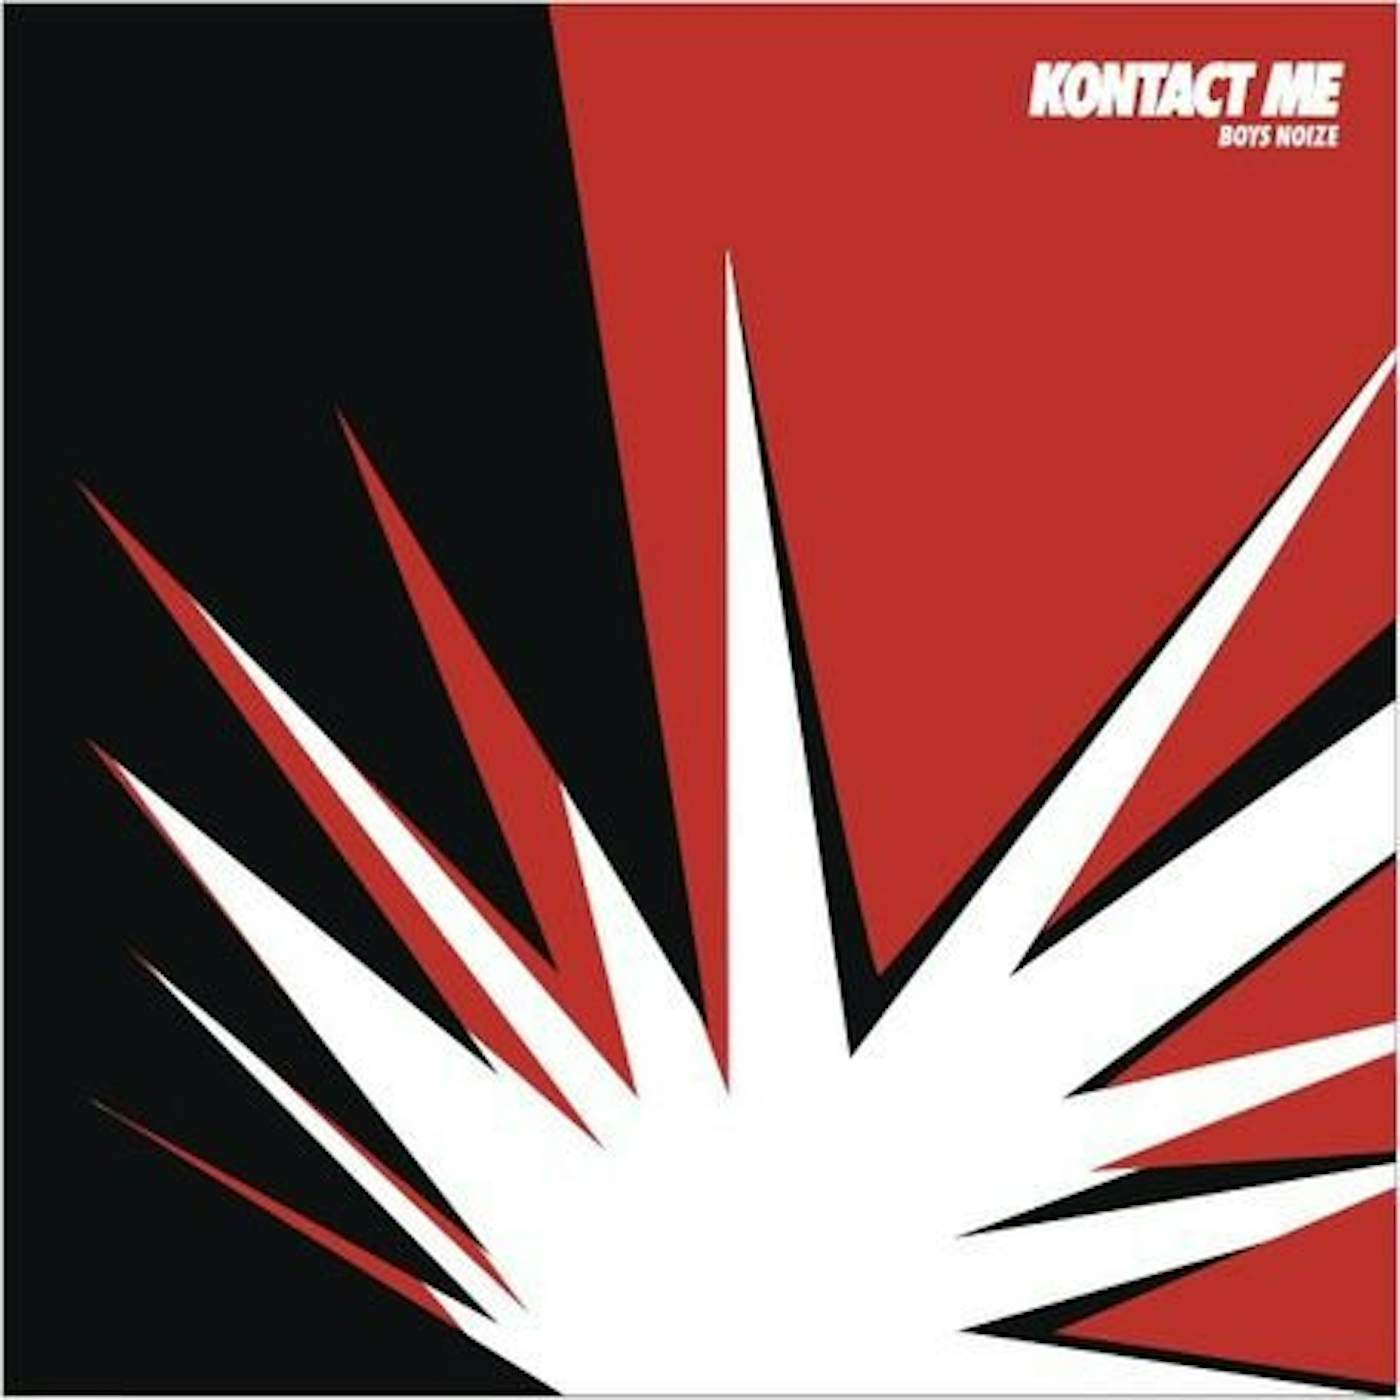 Boys Noize Kontact Me Remixes Vinyl Record